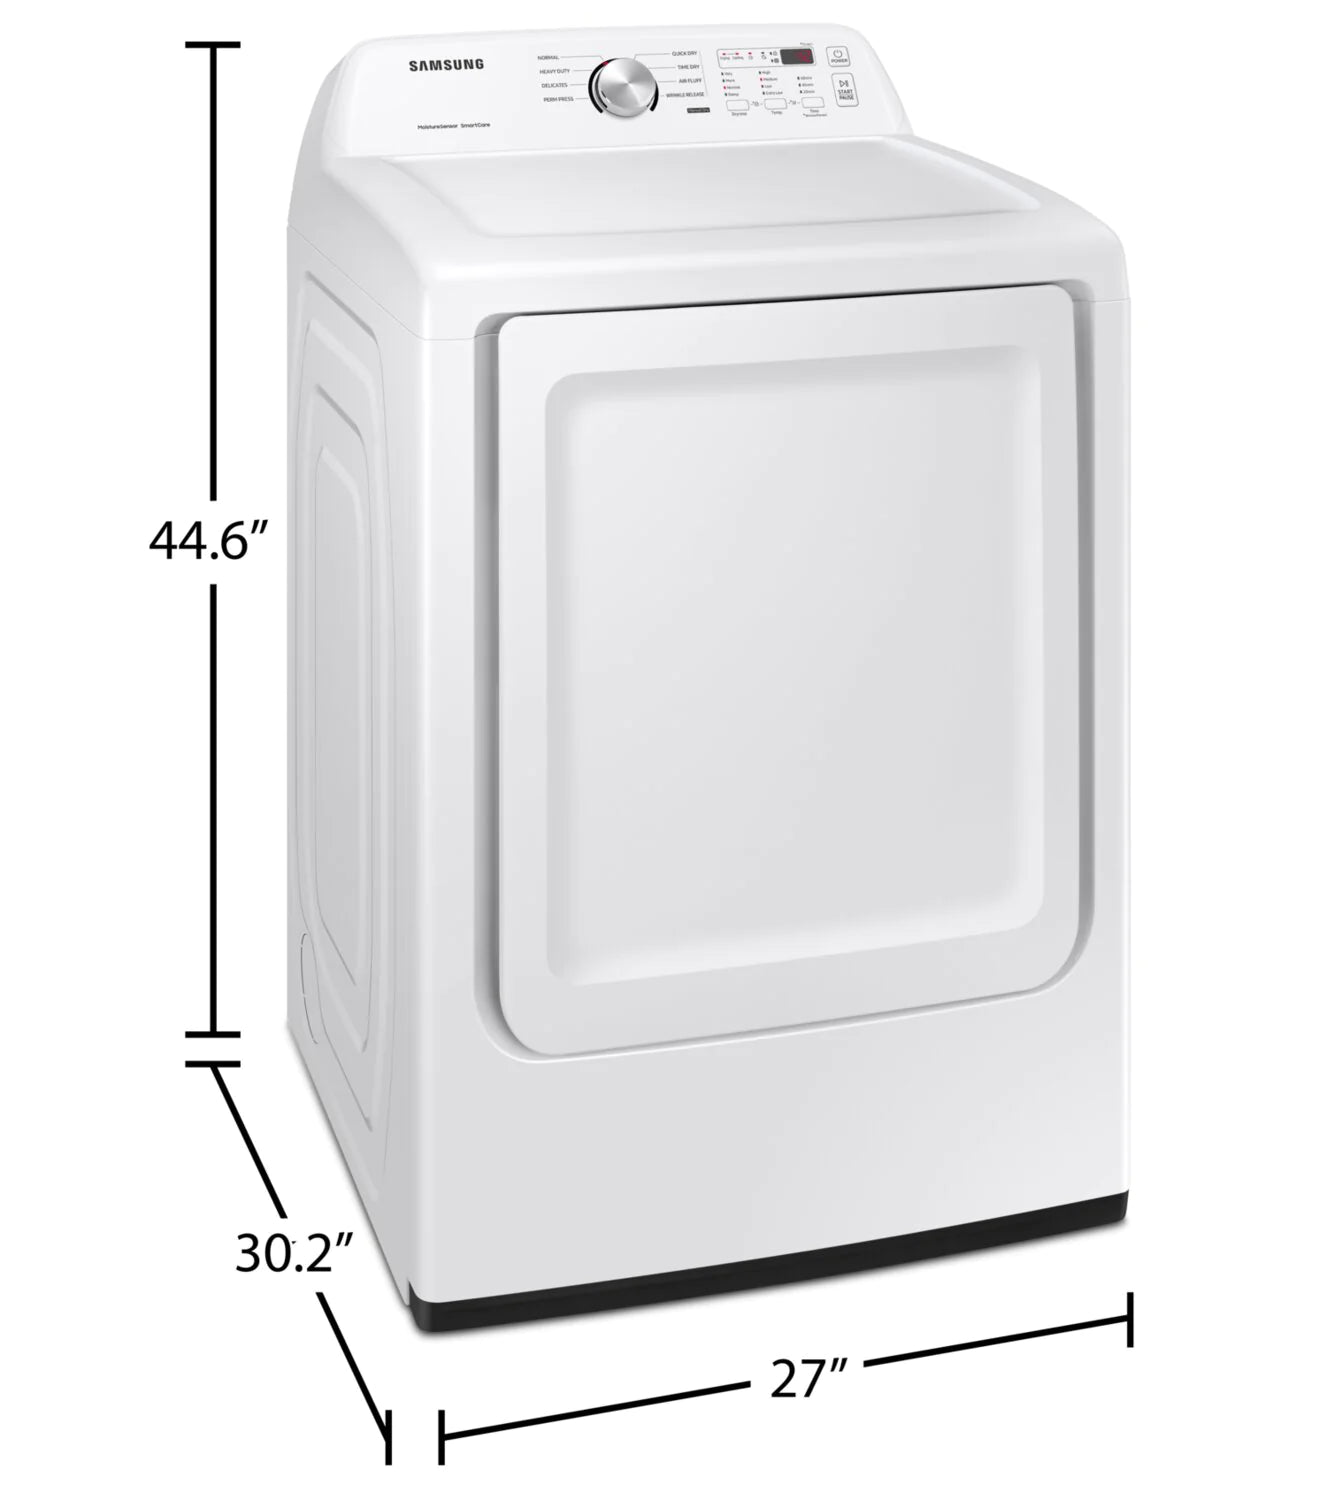 Samsung Dryers 27" White DVE45T3200W